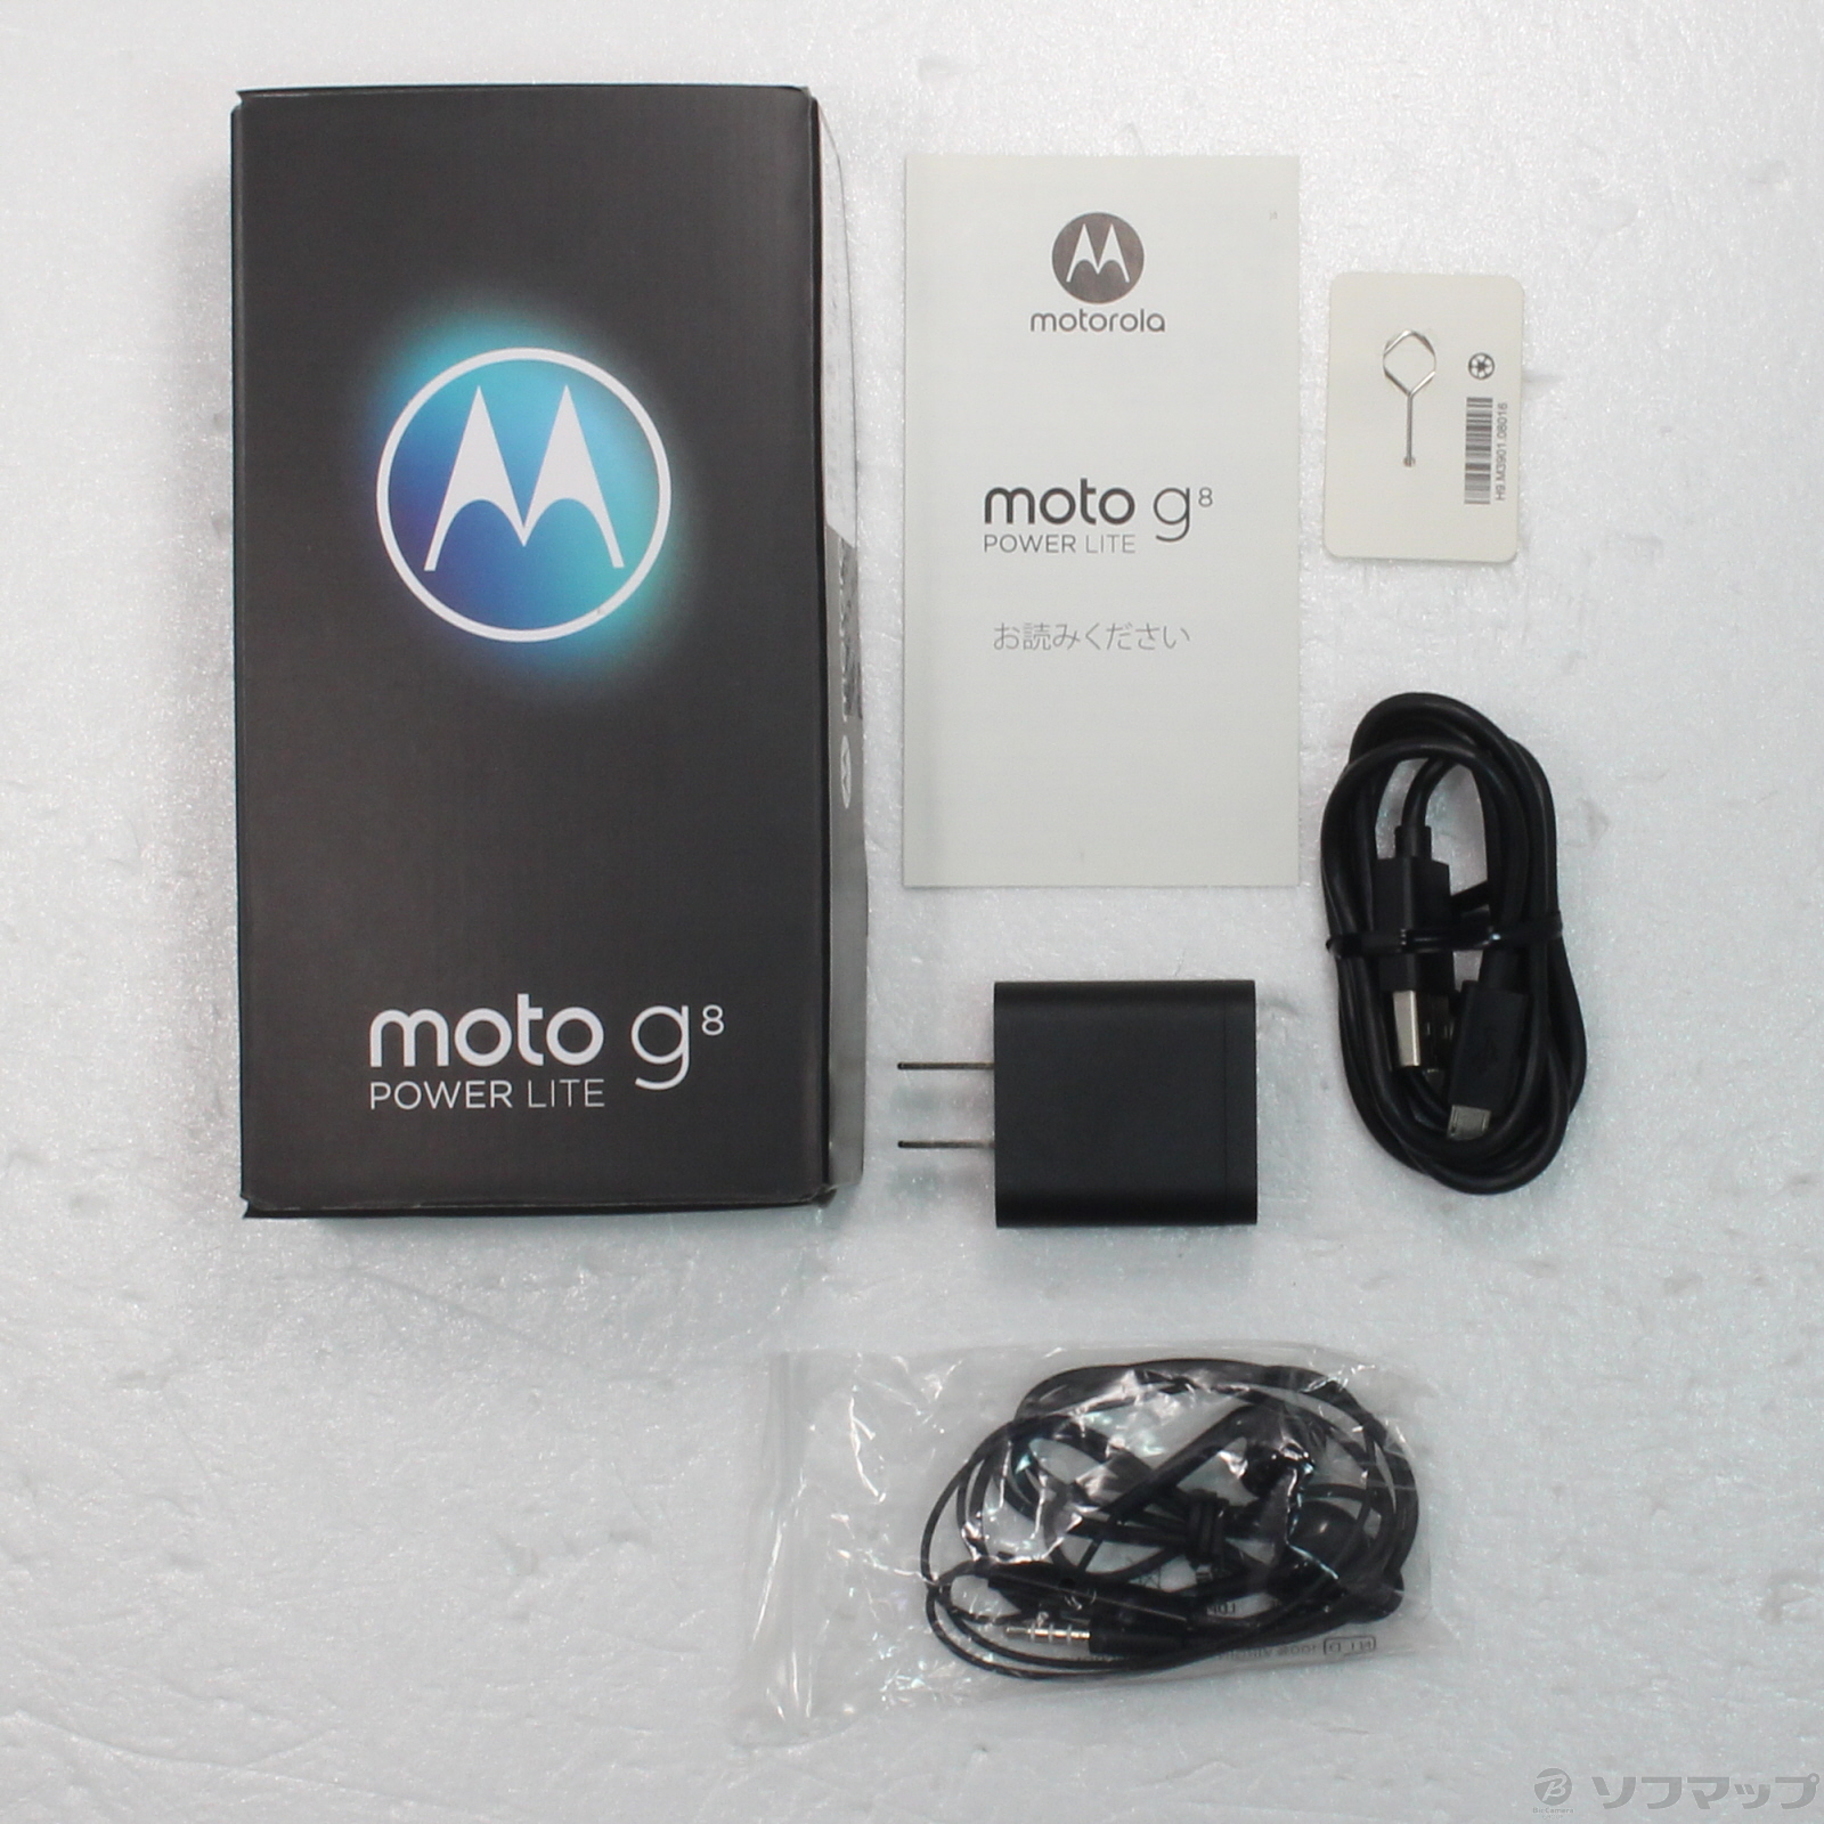 中古】Moto G8 power lite 64GB ポーラブルー PAKB0003JP SIMフリー